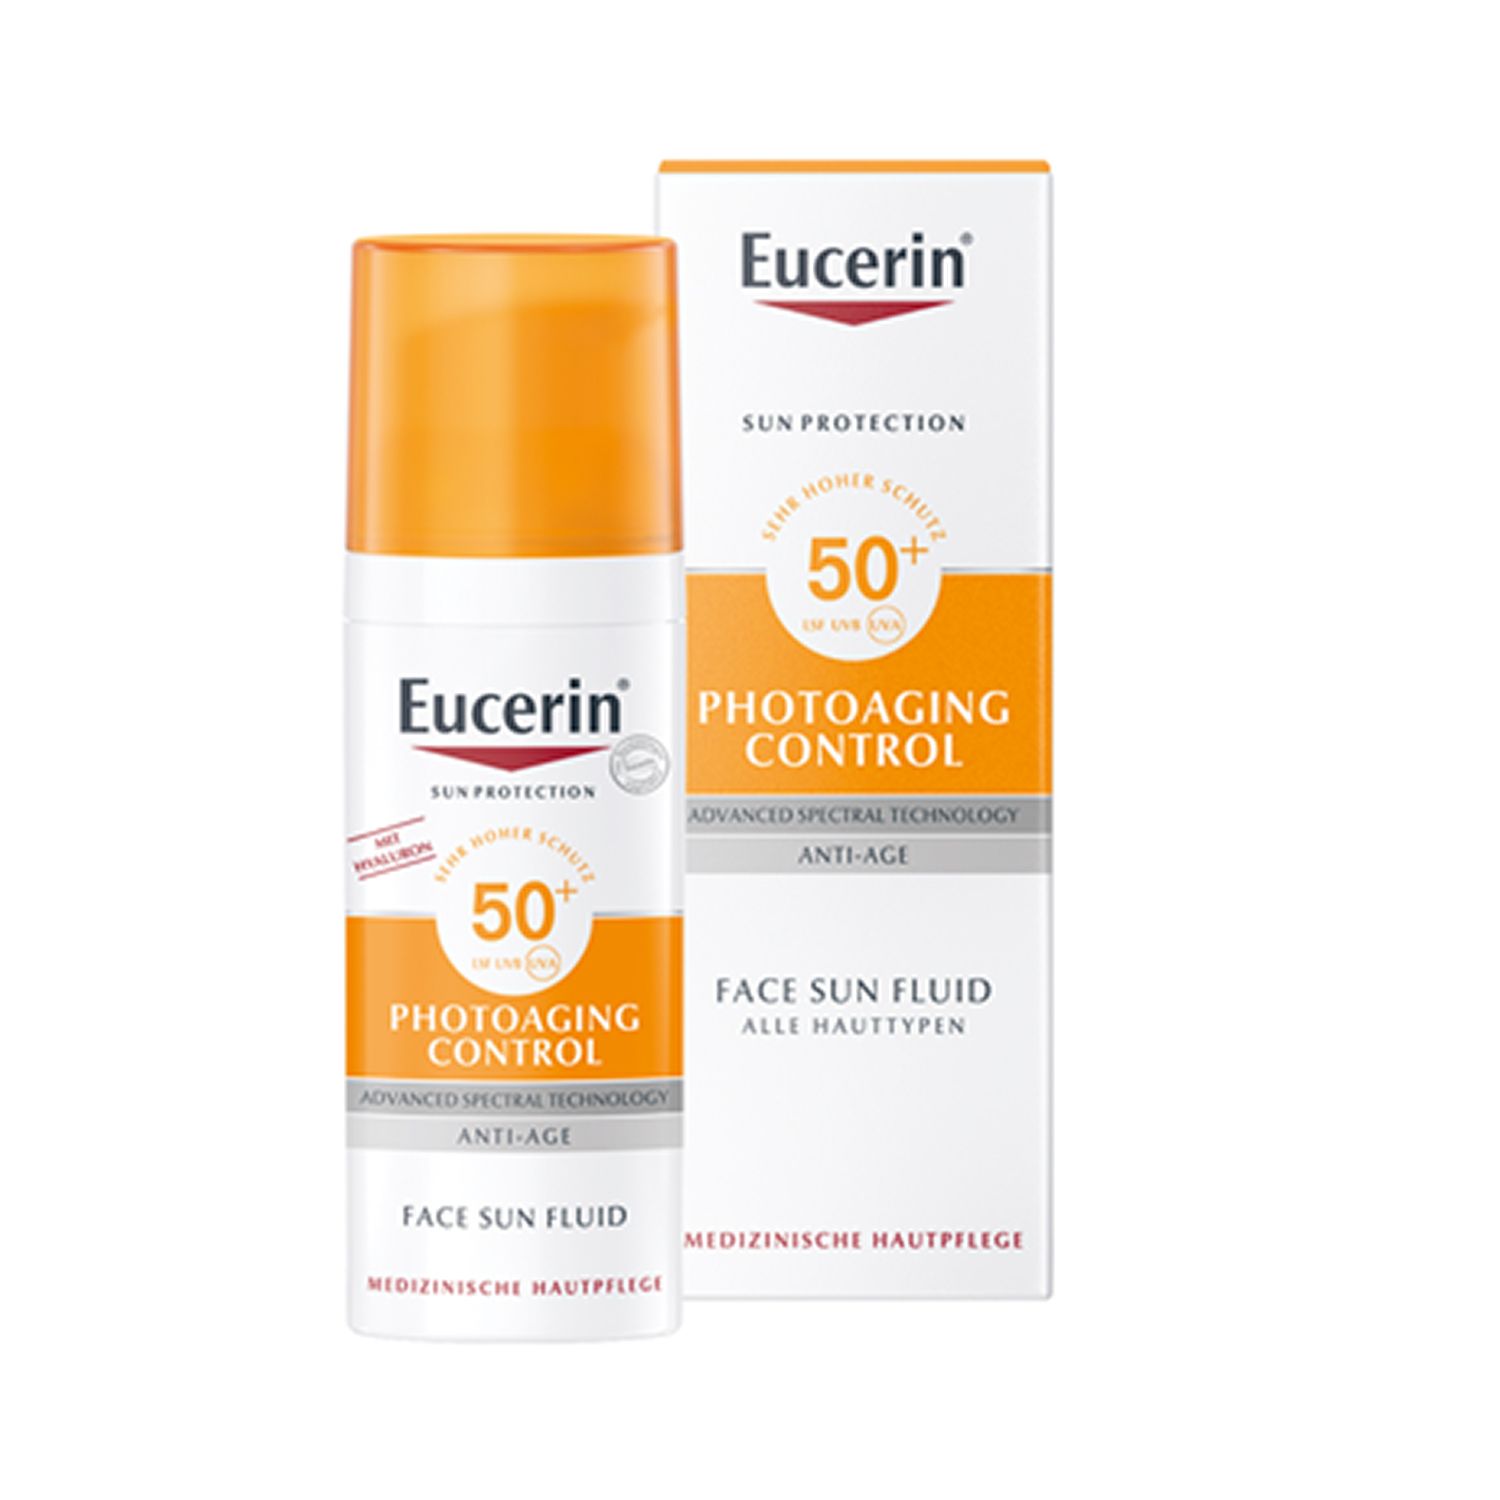 Eucerin® Photoaging Control Face Sun Fluid LSF 50 + Eucerin Oil Control Body LSF50+ 50ml GRATIS